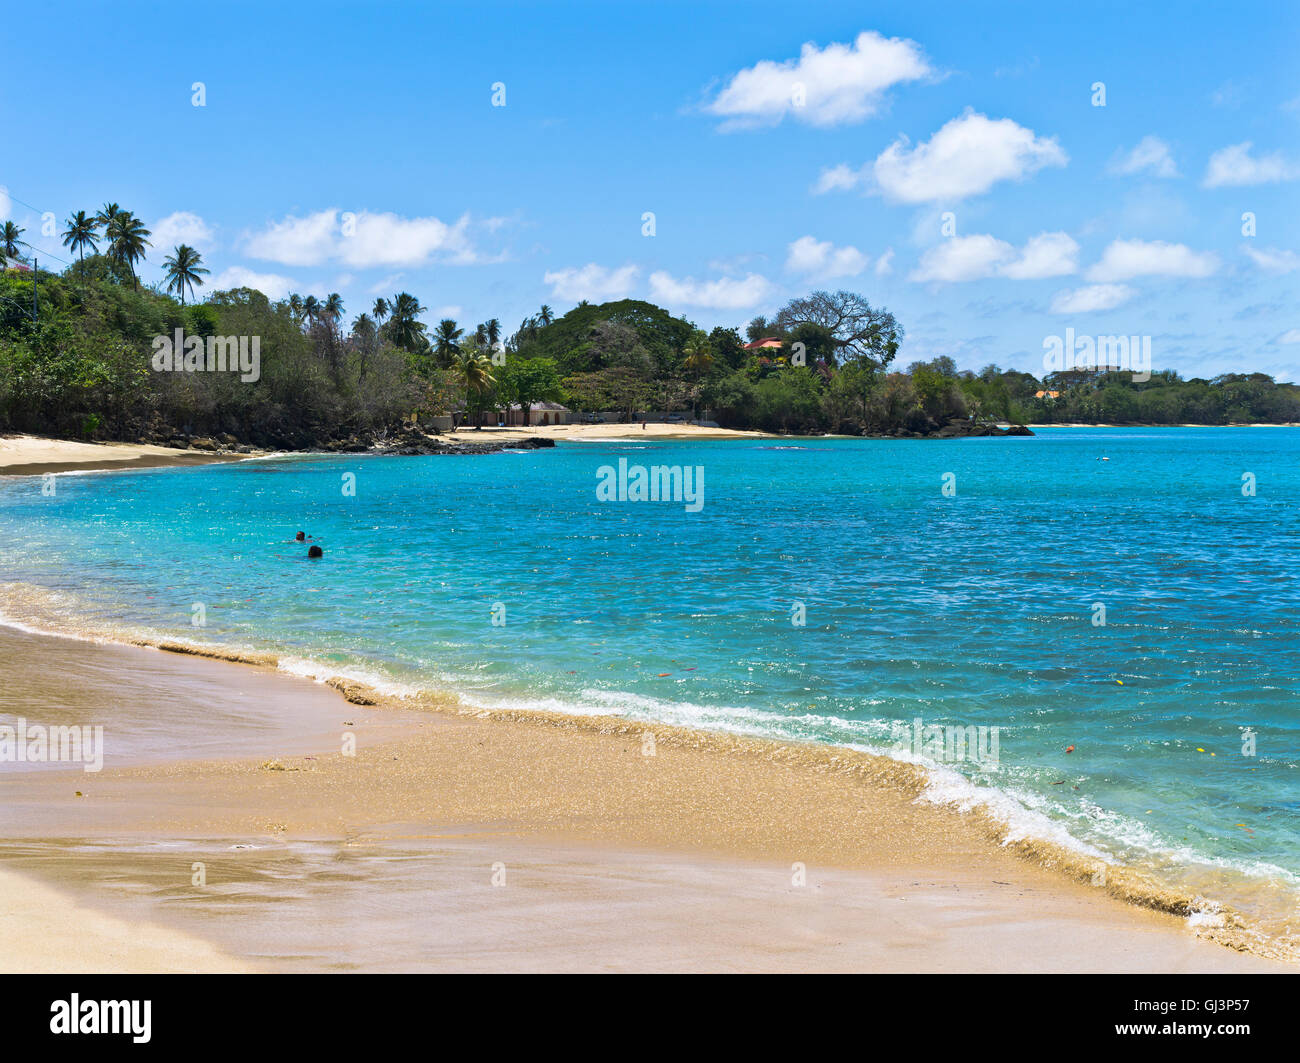 dh Great Courland Bay TOBAGO KARIBIK Karibik Inseln Sand Strand blau Meer Bucht Küste antillen West indies Insel Stockfoto